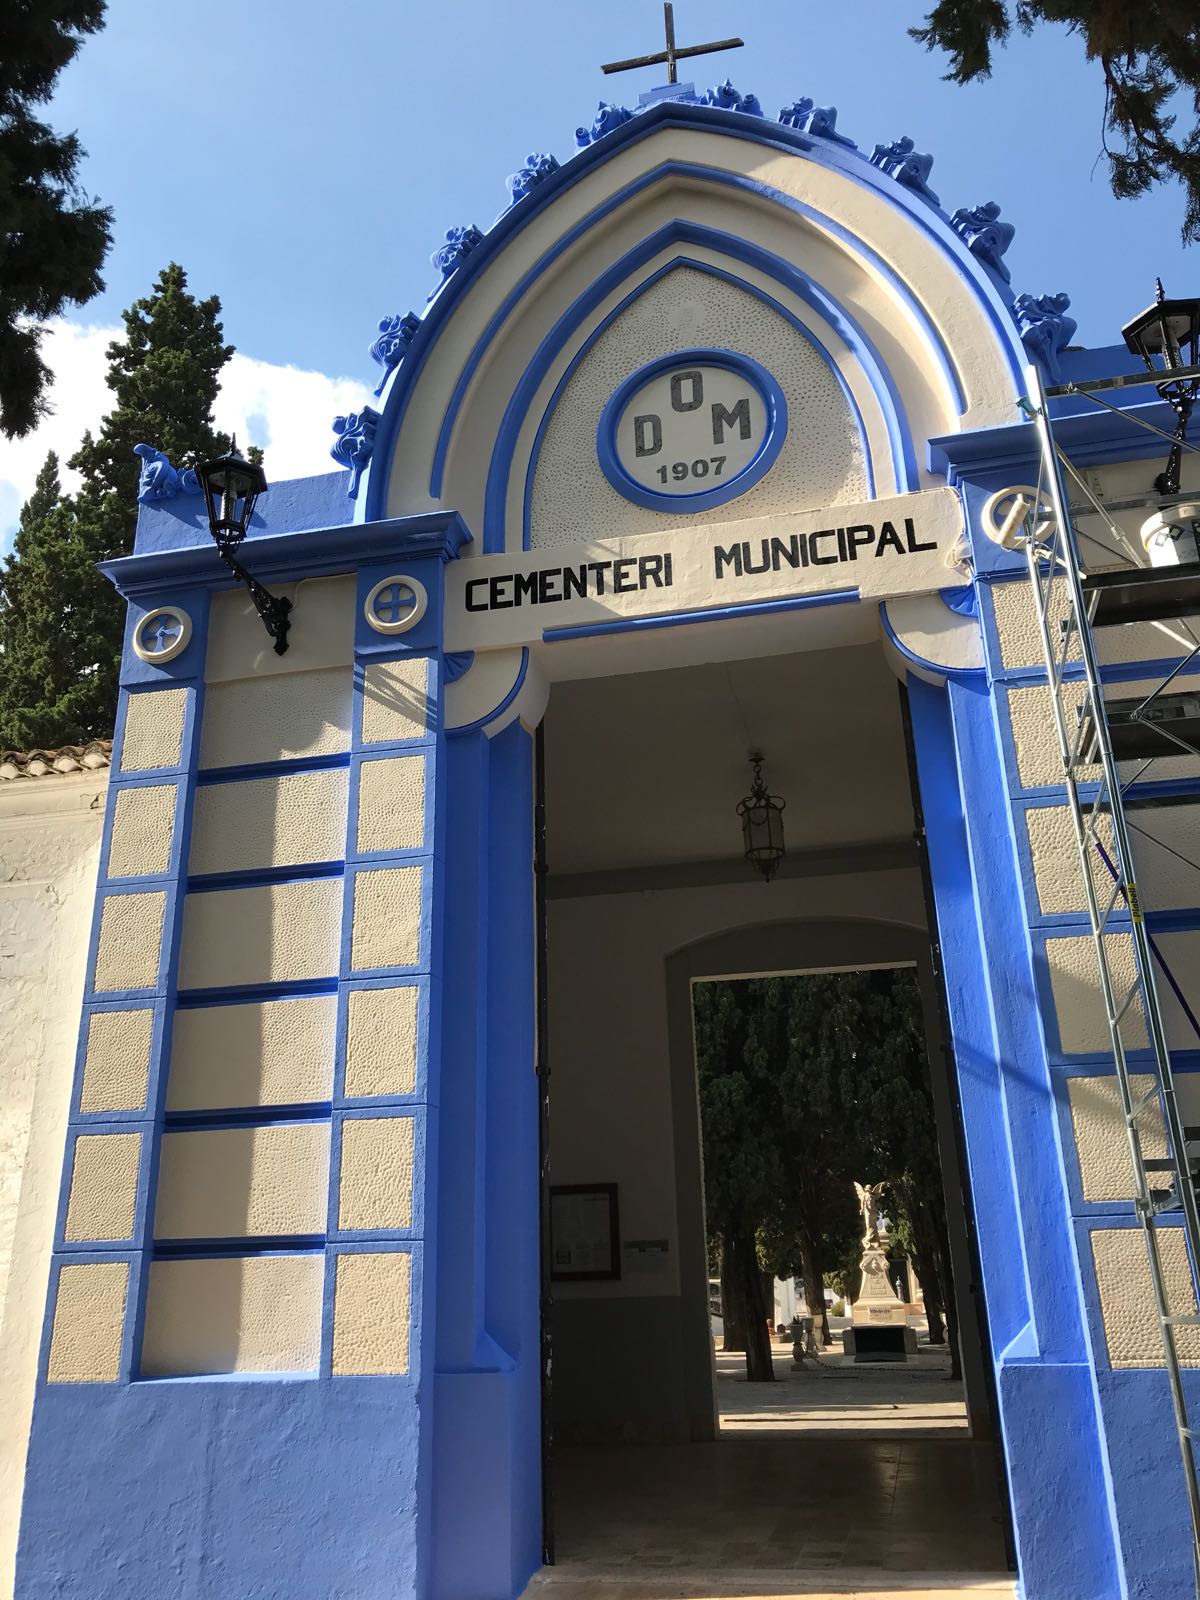 L'Ajuntament de Canals prepara el Cementeri Municipal per al Dia de Tot Sants